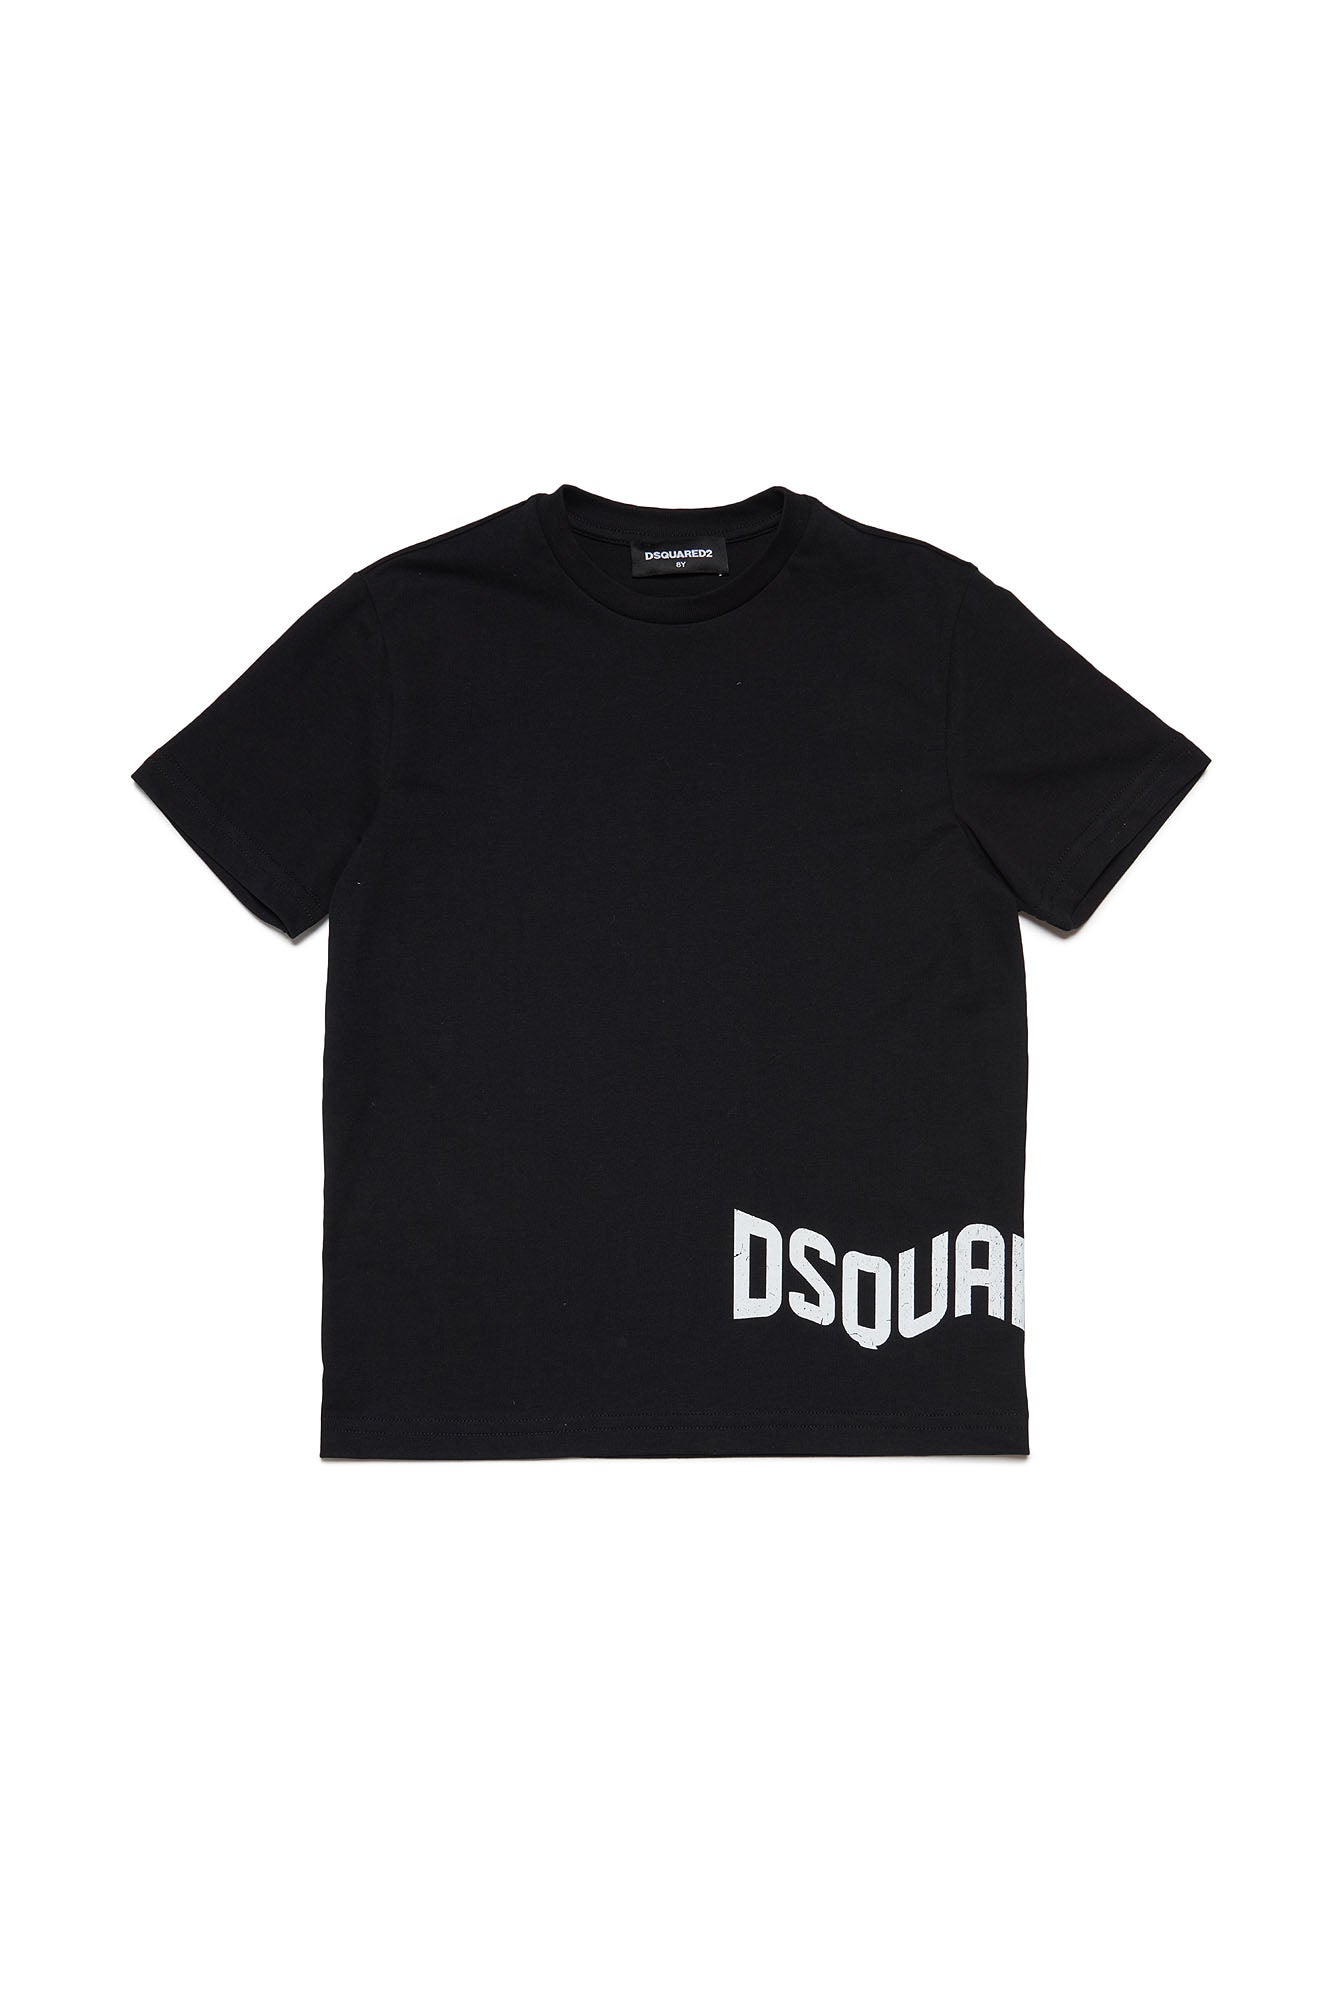 Dsquared2-T-Shirt Unisex Bambino Relax Logo-Nero